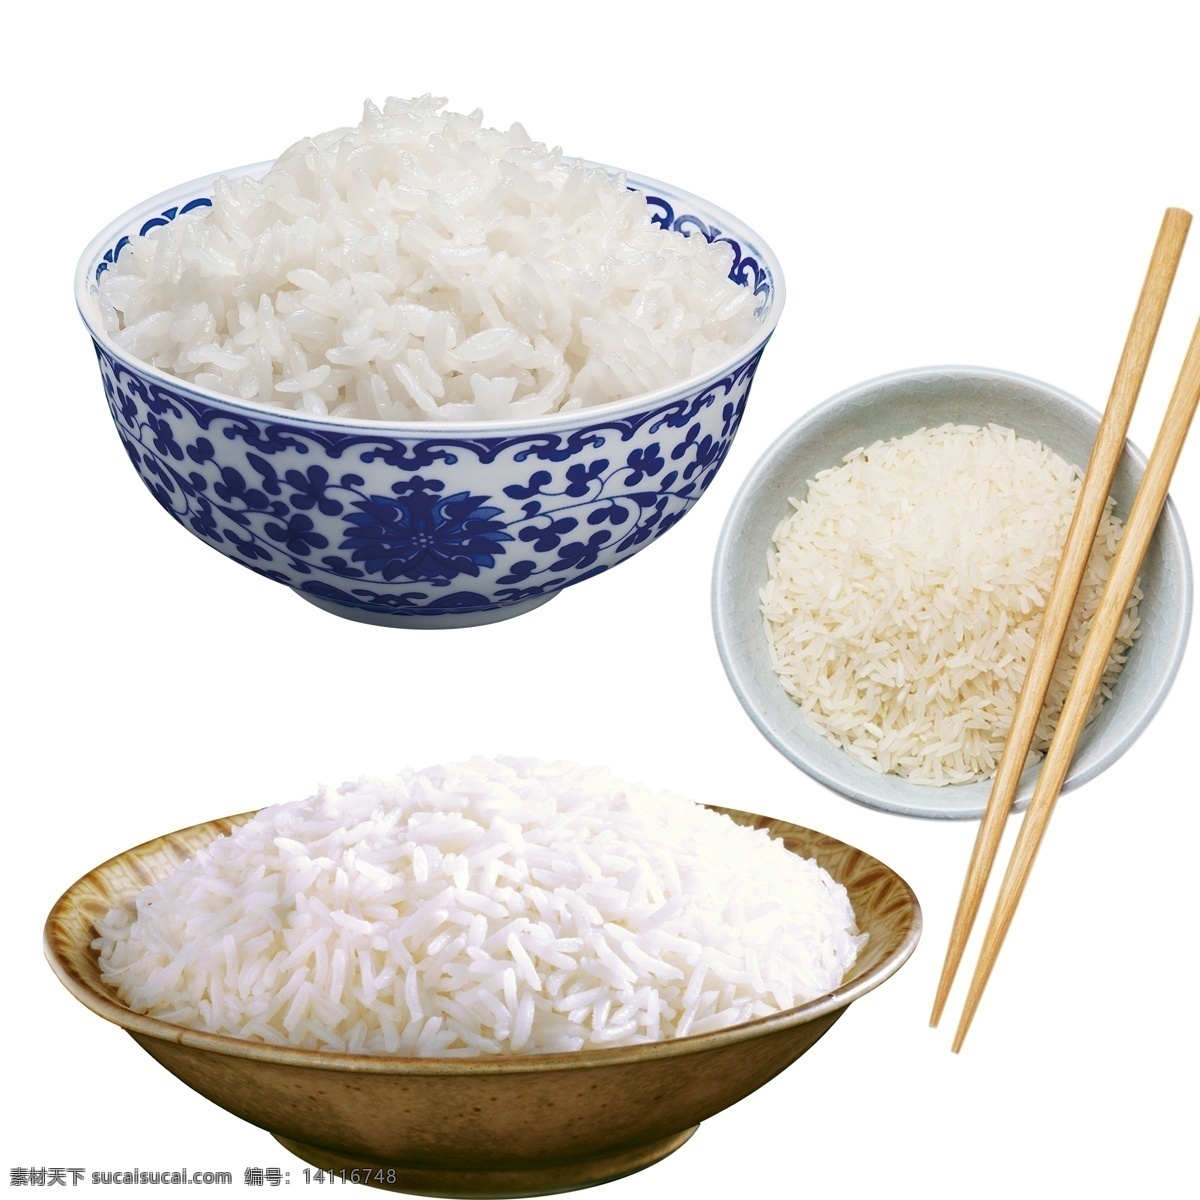 大米饭 大米 米饭 粮食 主食 五谷 糯米 蛋炒饭 炒饭 水稻 白米饭 米粒 食物 粮站 米面